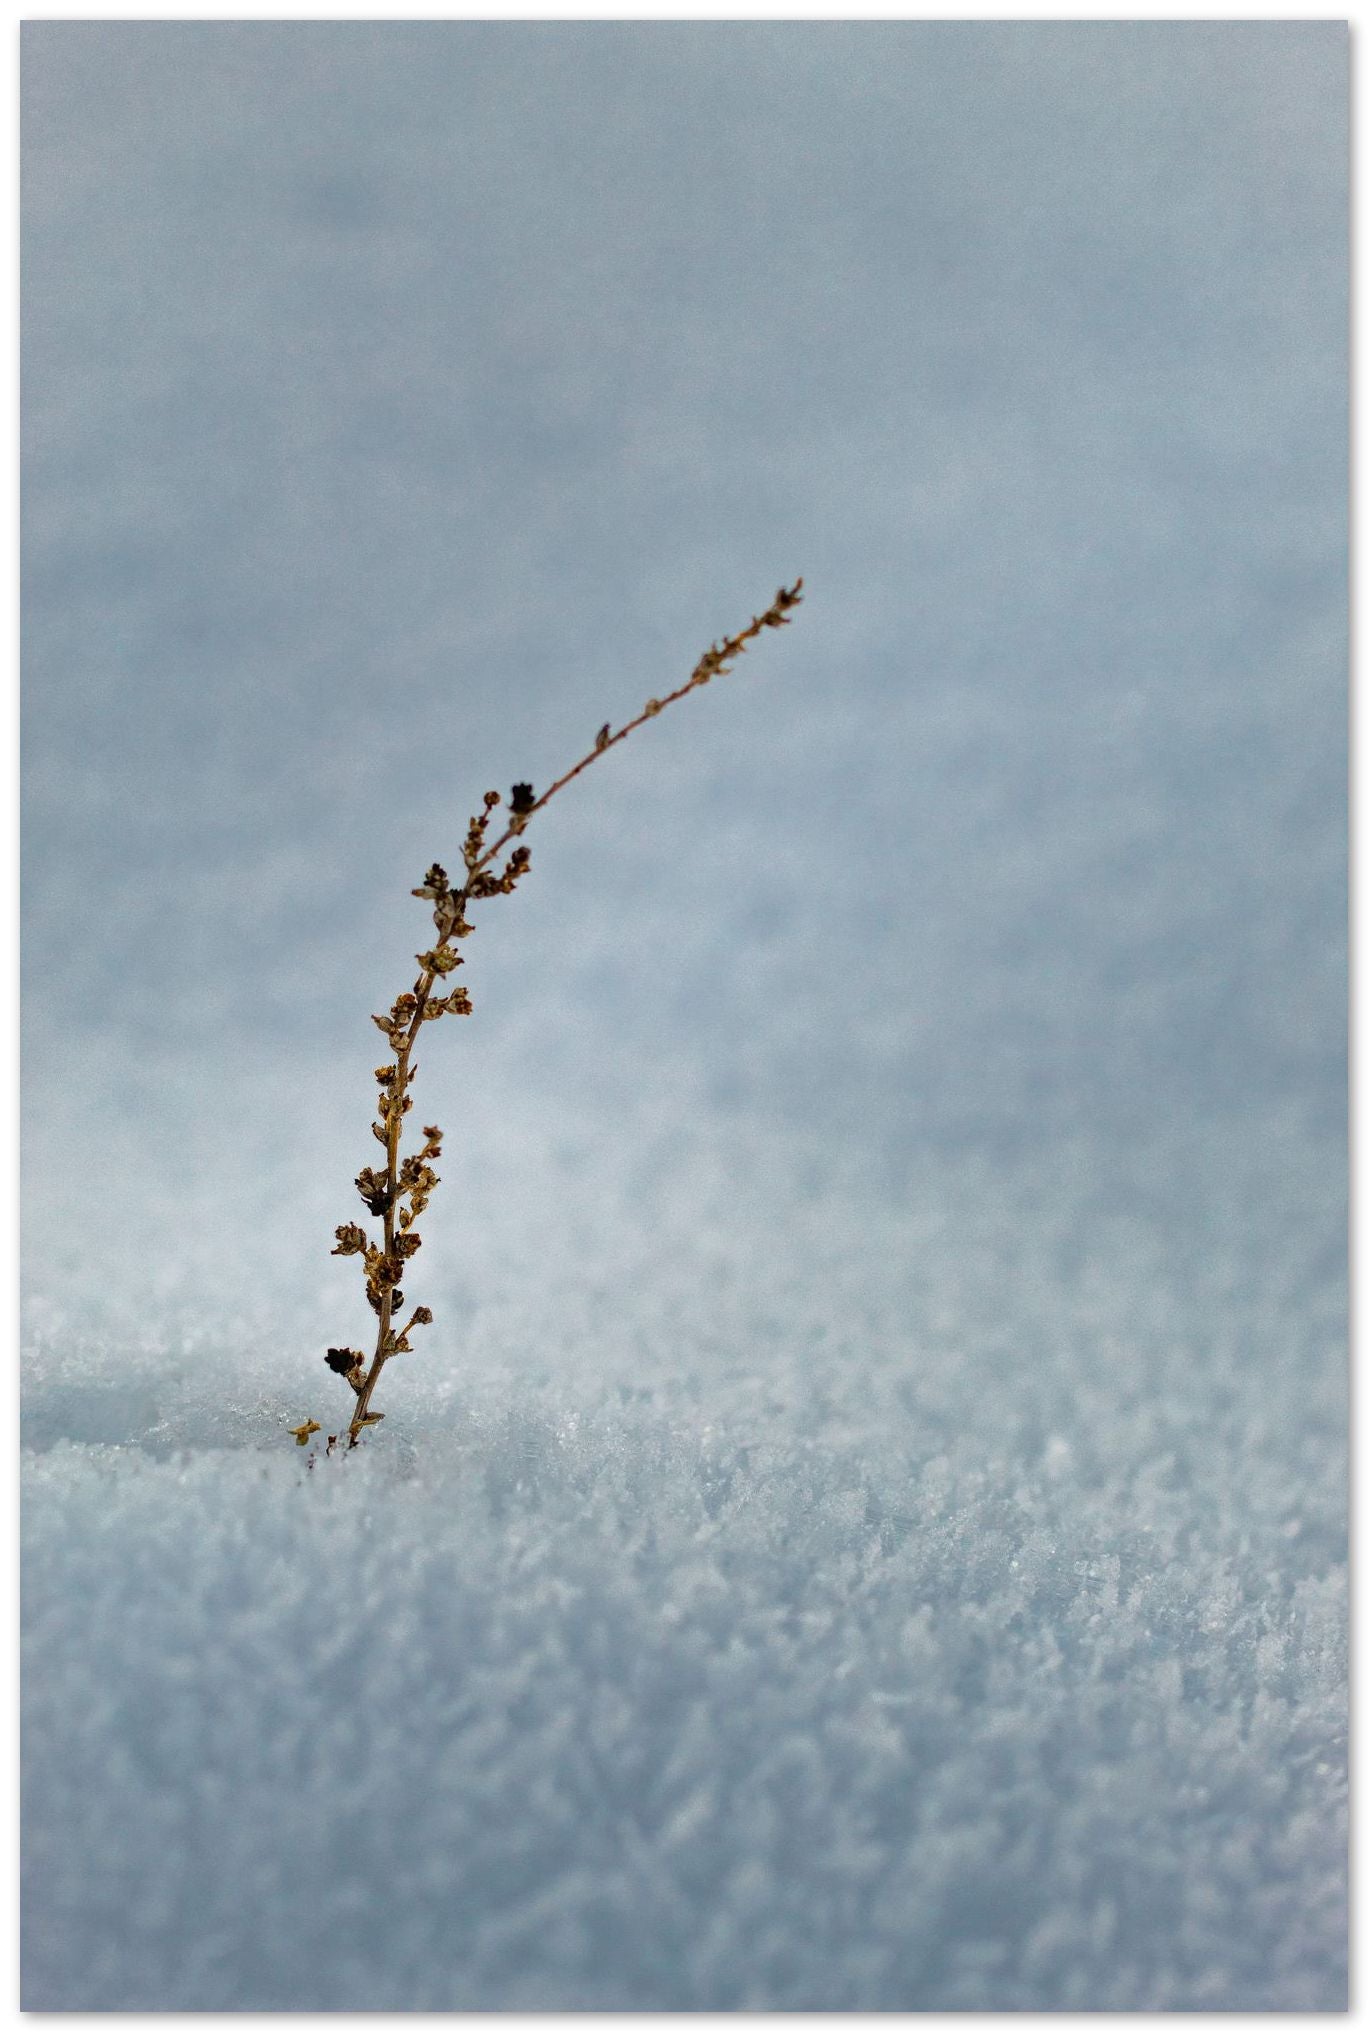 Planta creciendo en el frio de la nieve - @filmload